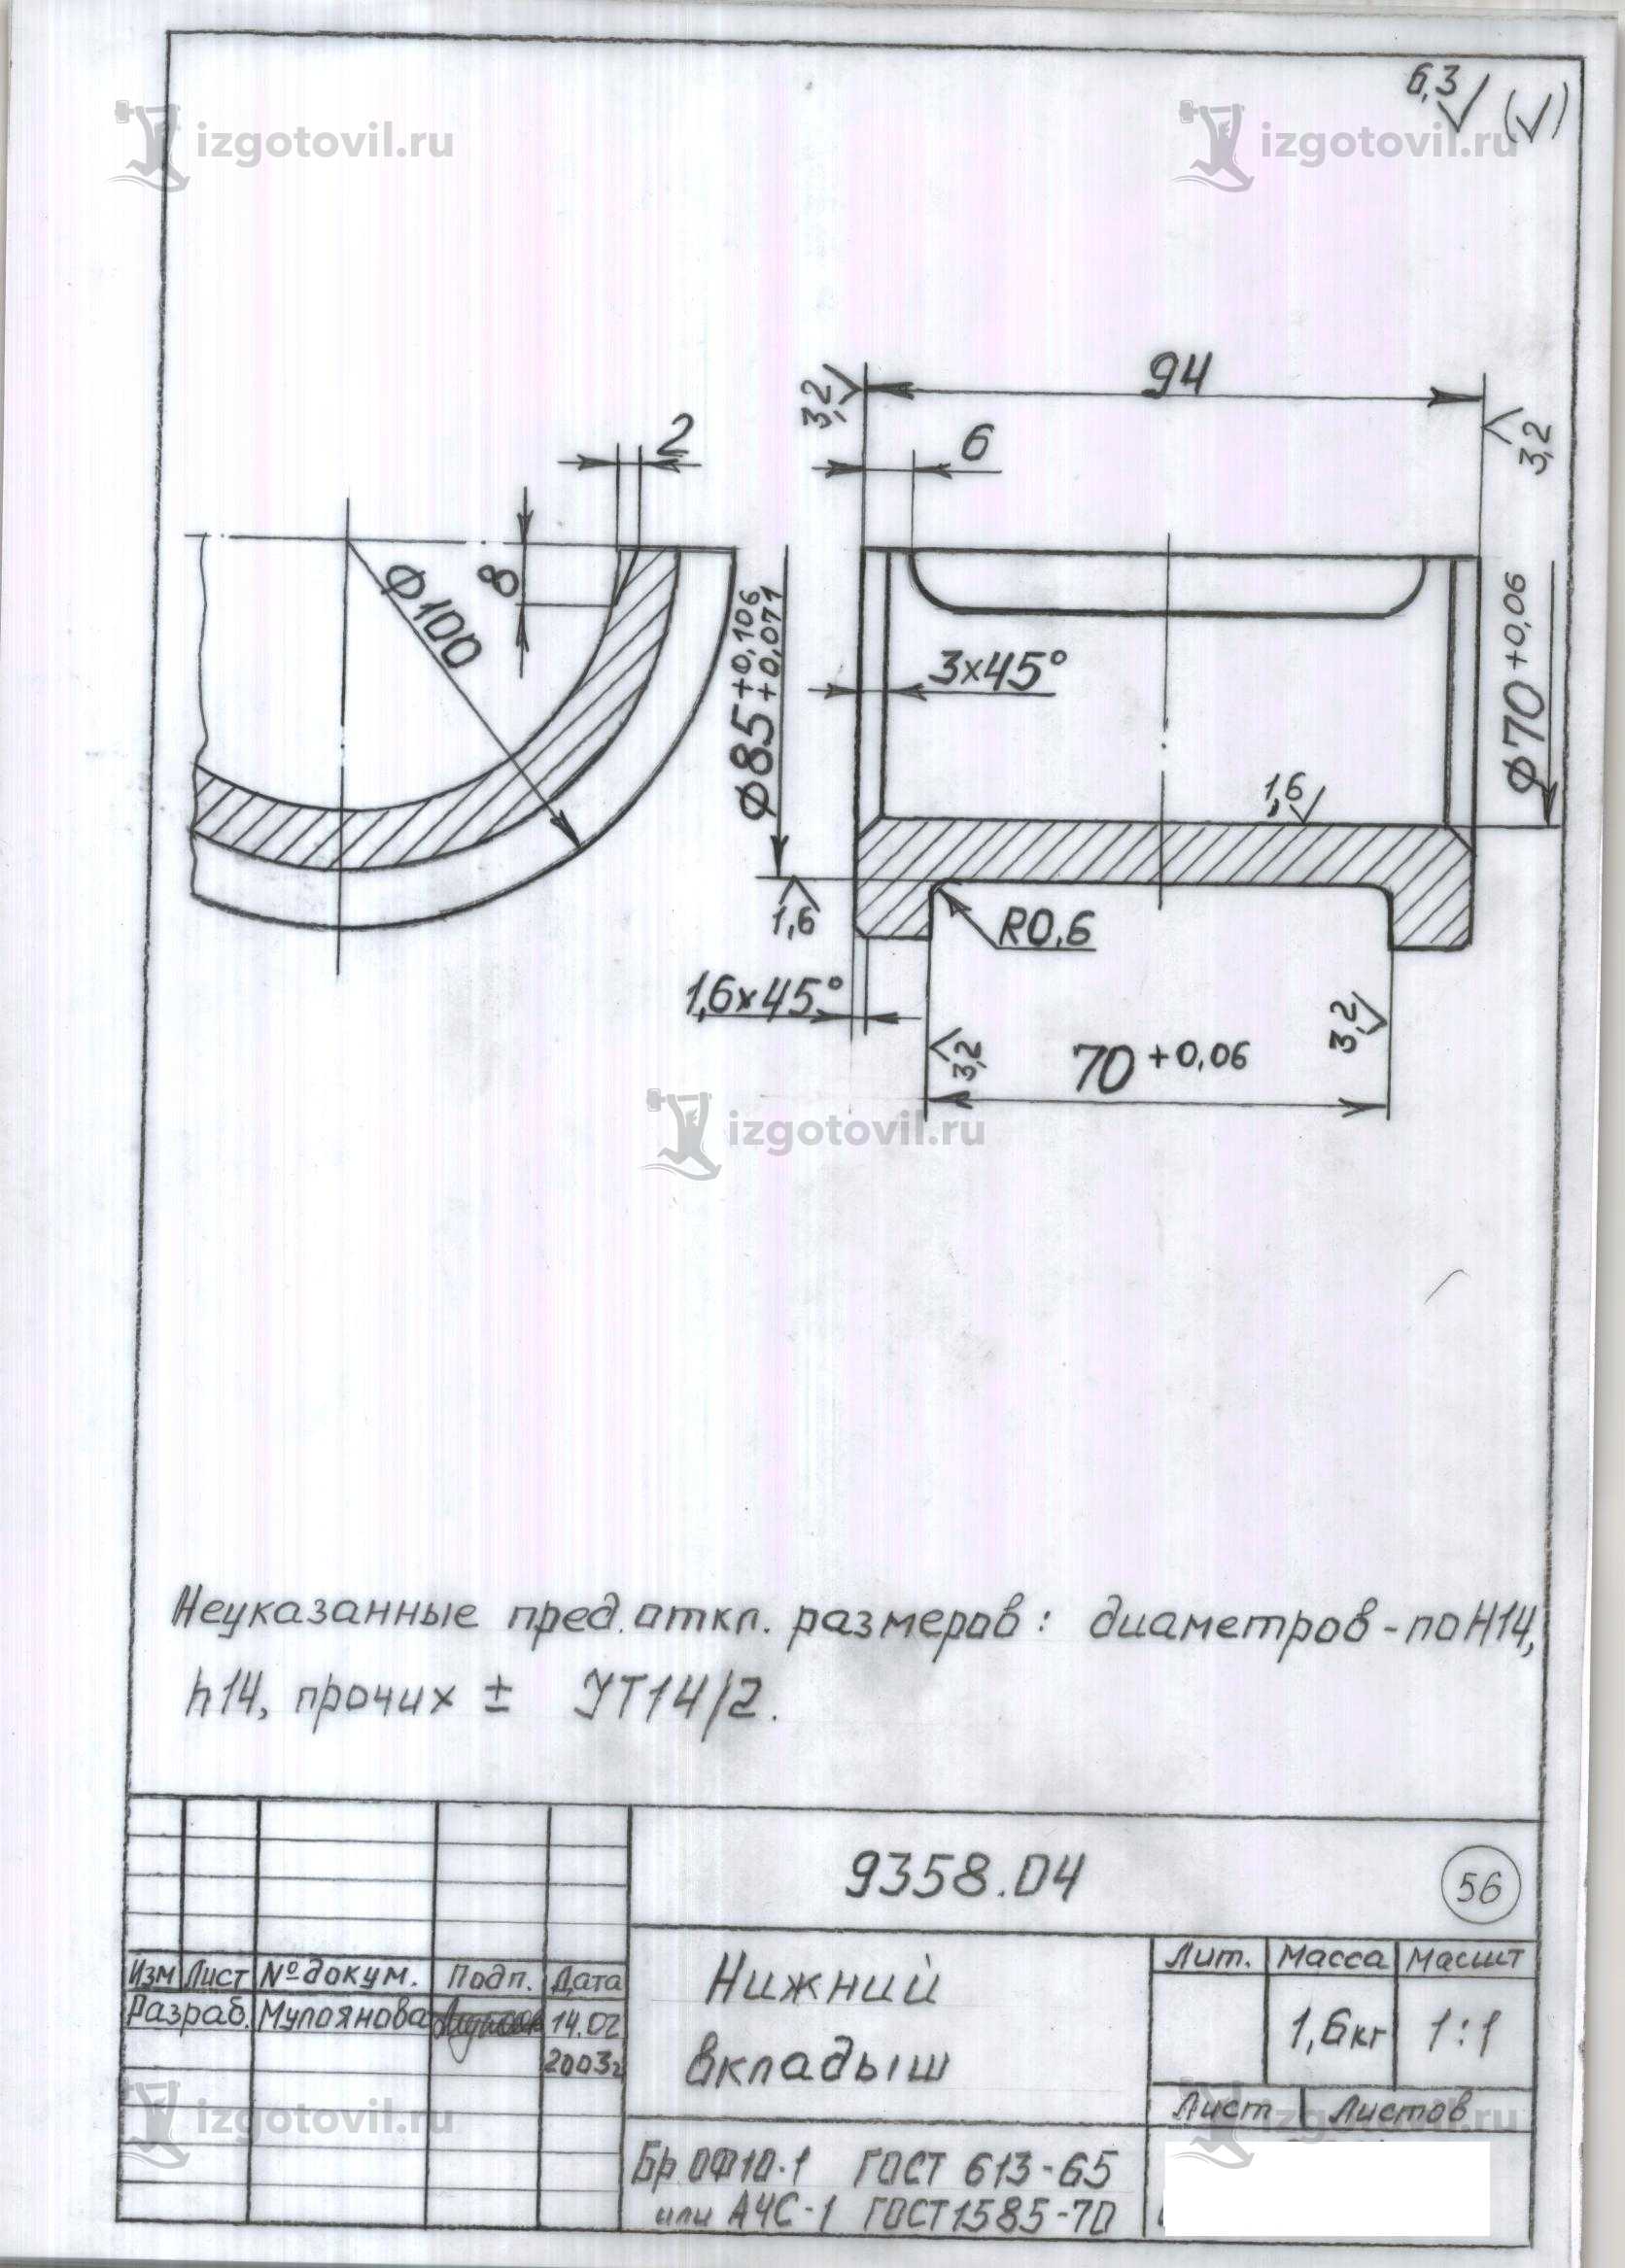 Изготовление цилиндрических деталей (колесо ВГ-4,5 с бандажом).